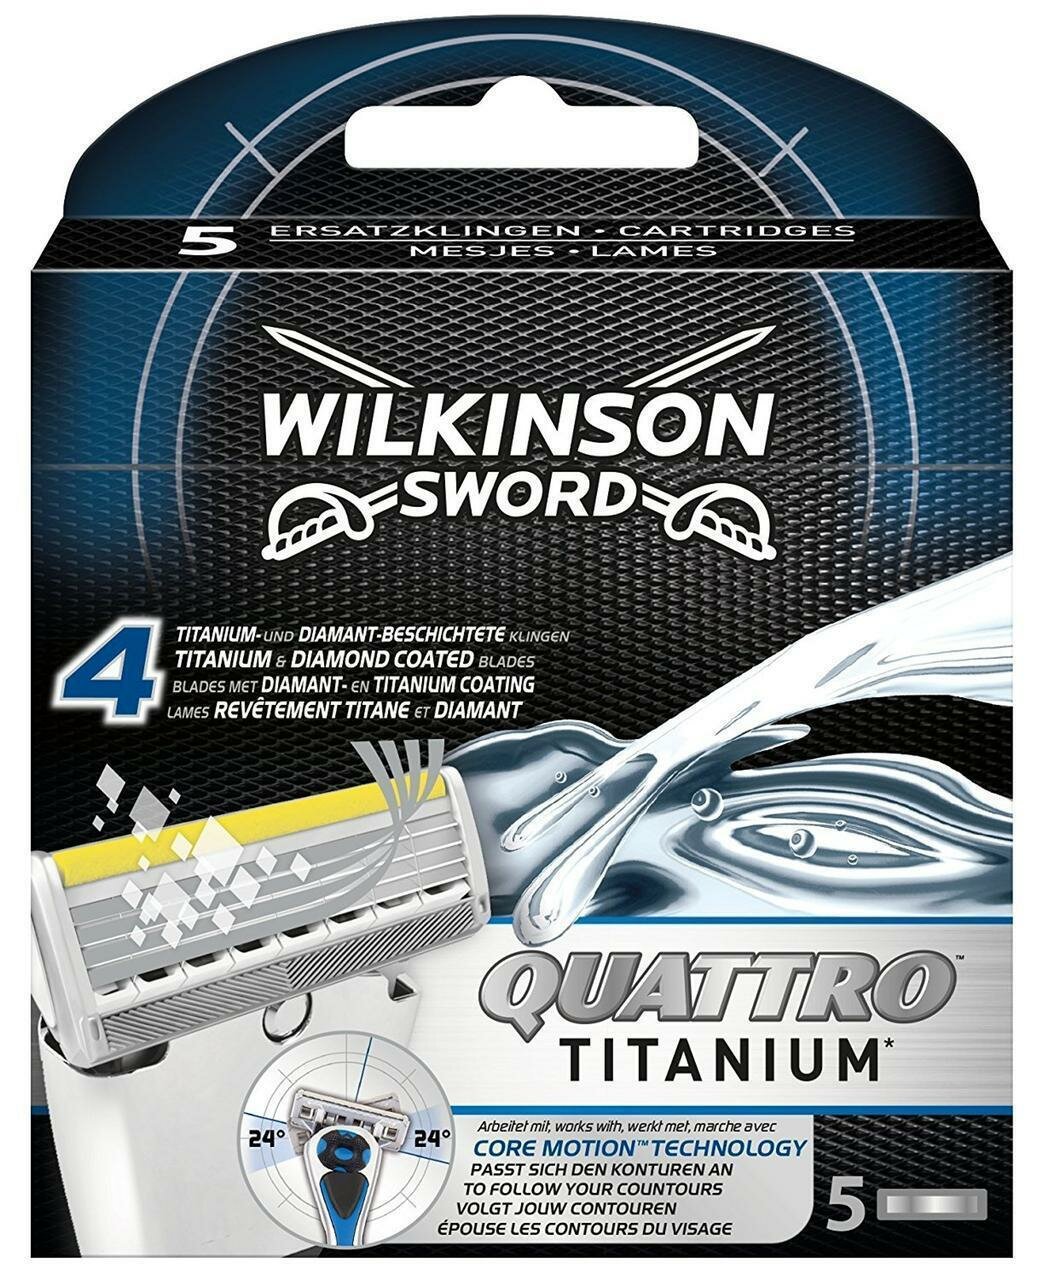 Wilkinson Sword / Schick Quattro Titanium Сменные кассеты, 5 шт.